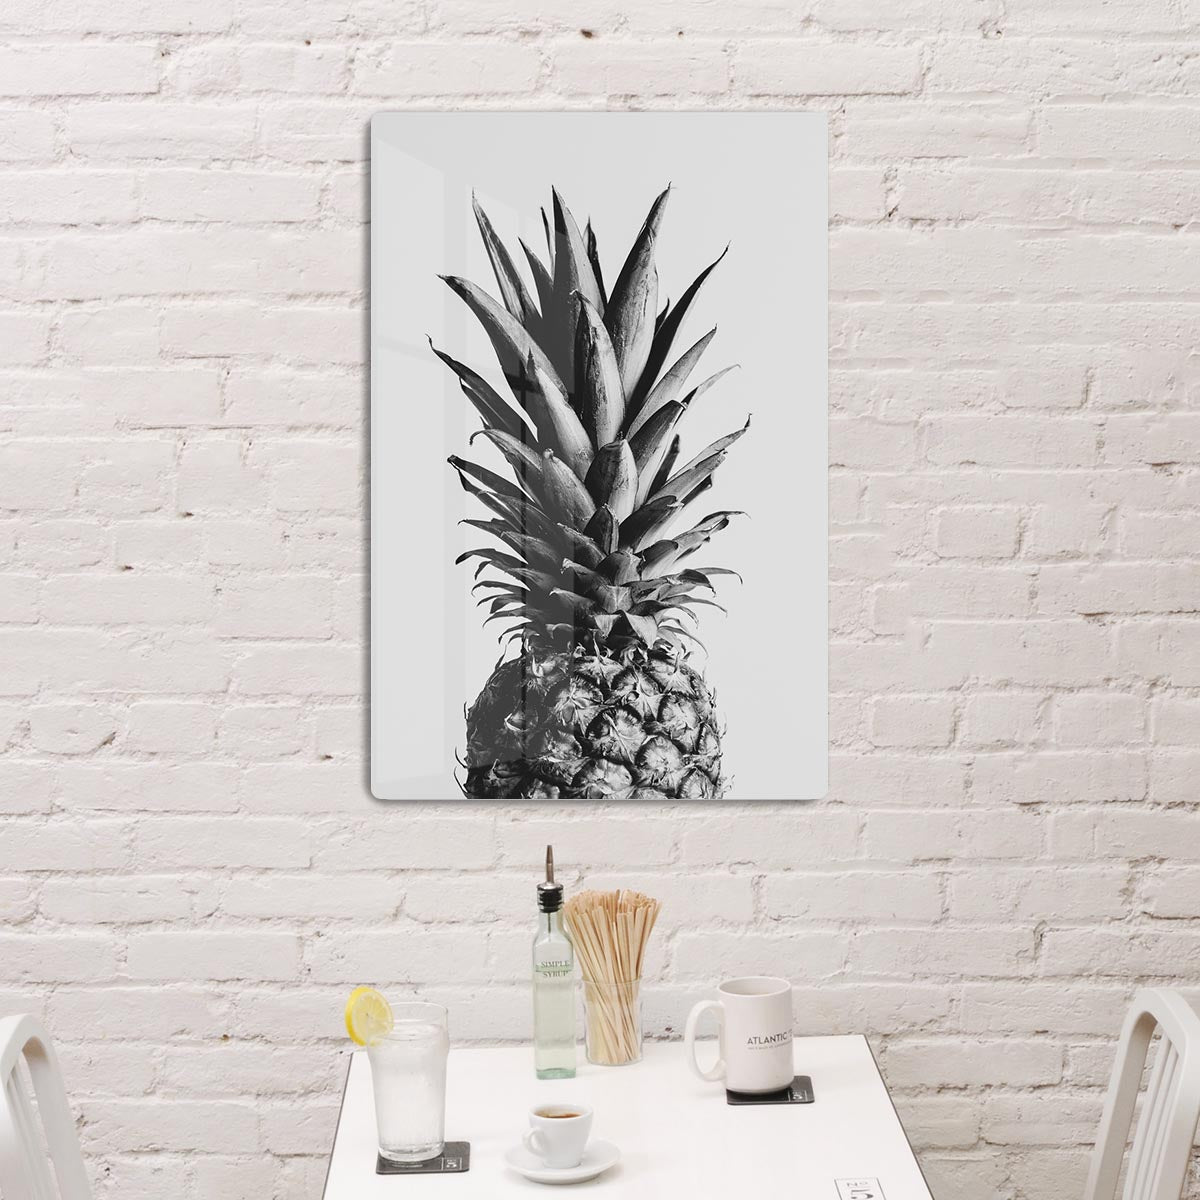 Pineapple Black a White 02 HD Metal Print - Canvas Art Rocks - 2